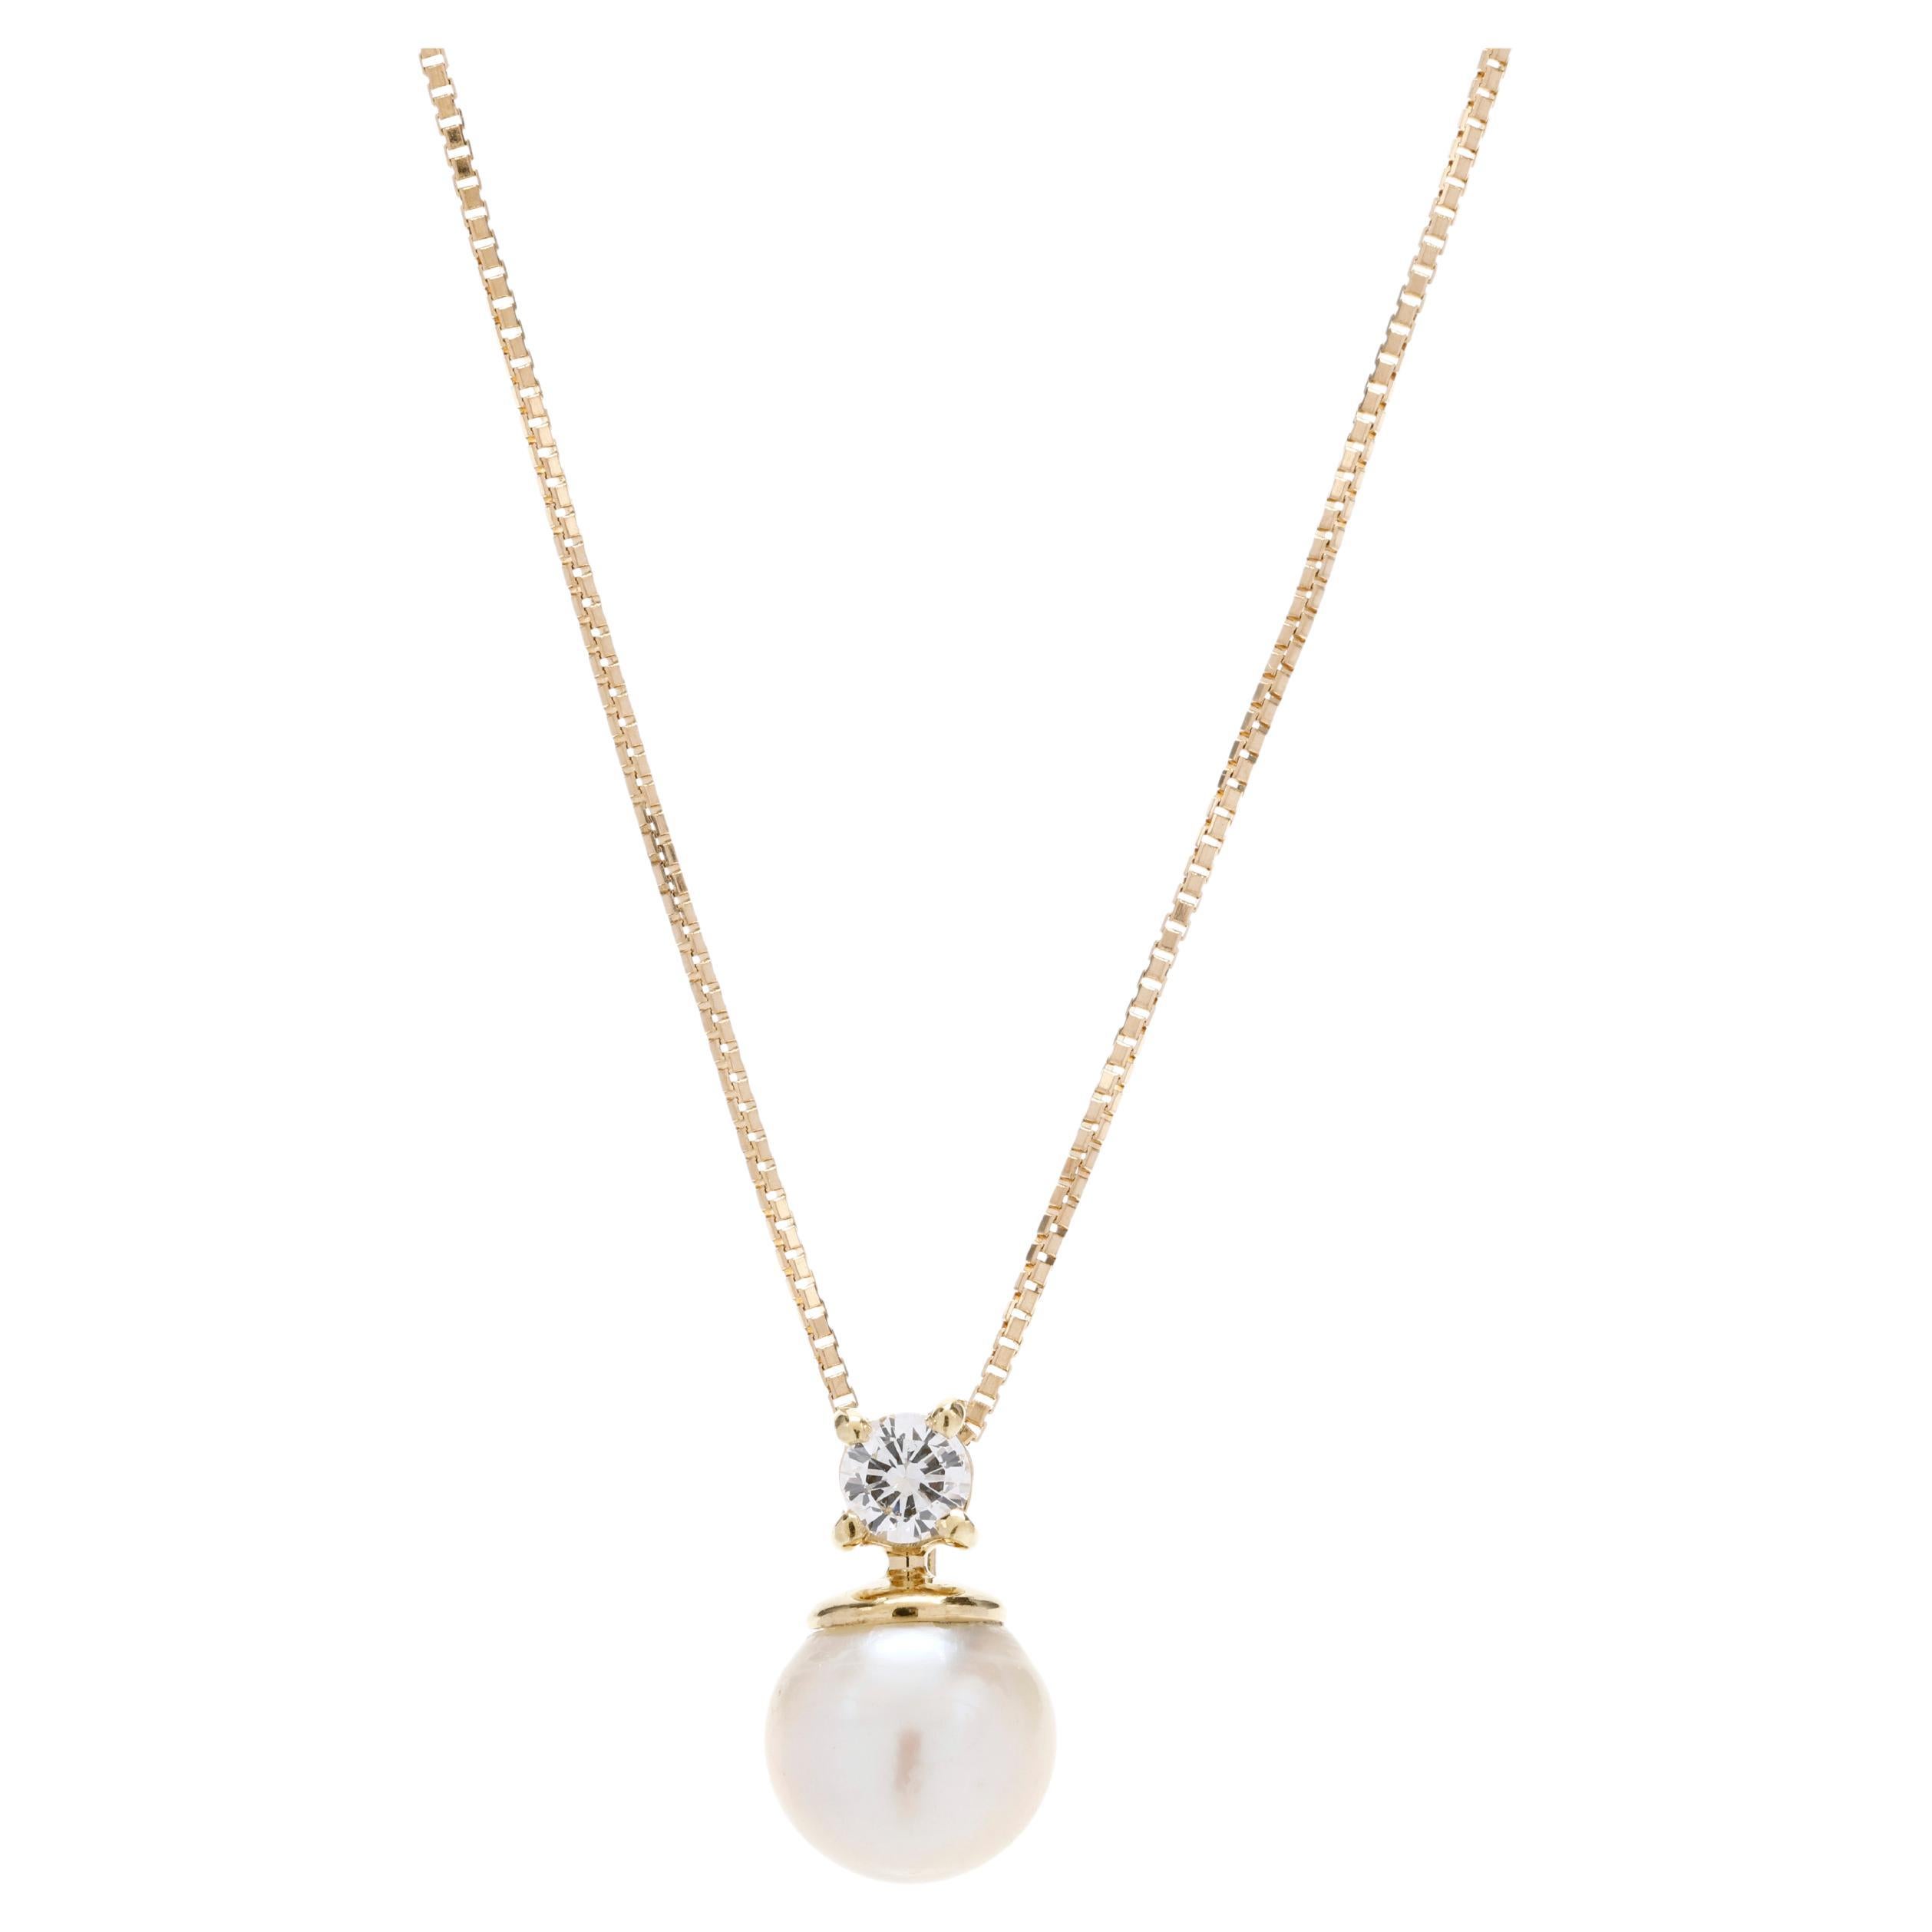 Halskette mit 0,15 Karat Diamant- und Perlen-Anhänger aus 18 Karat Gelbgold, Länge 18 Zoll